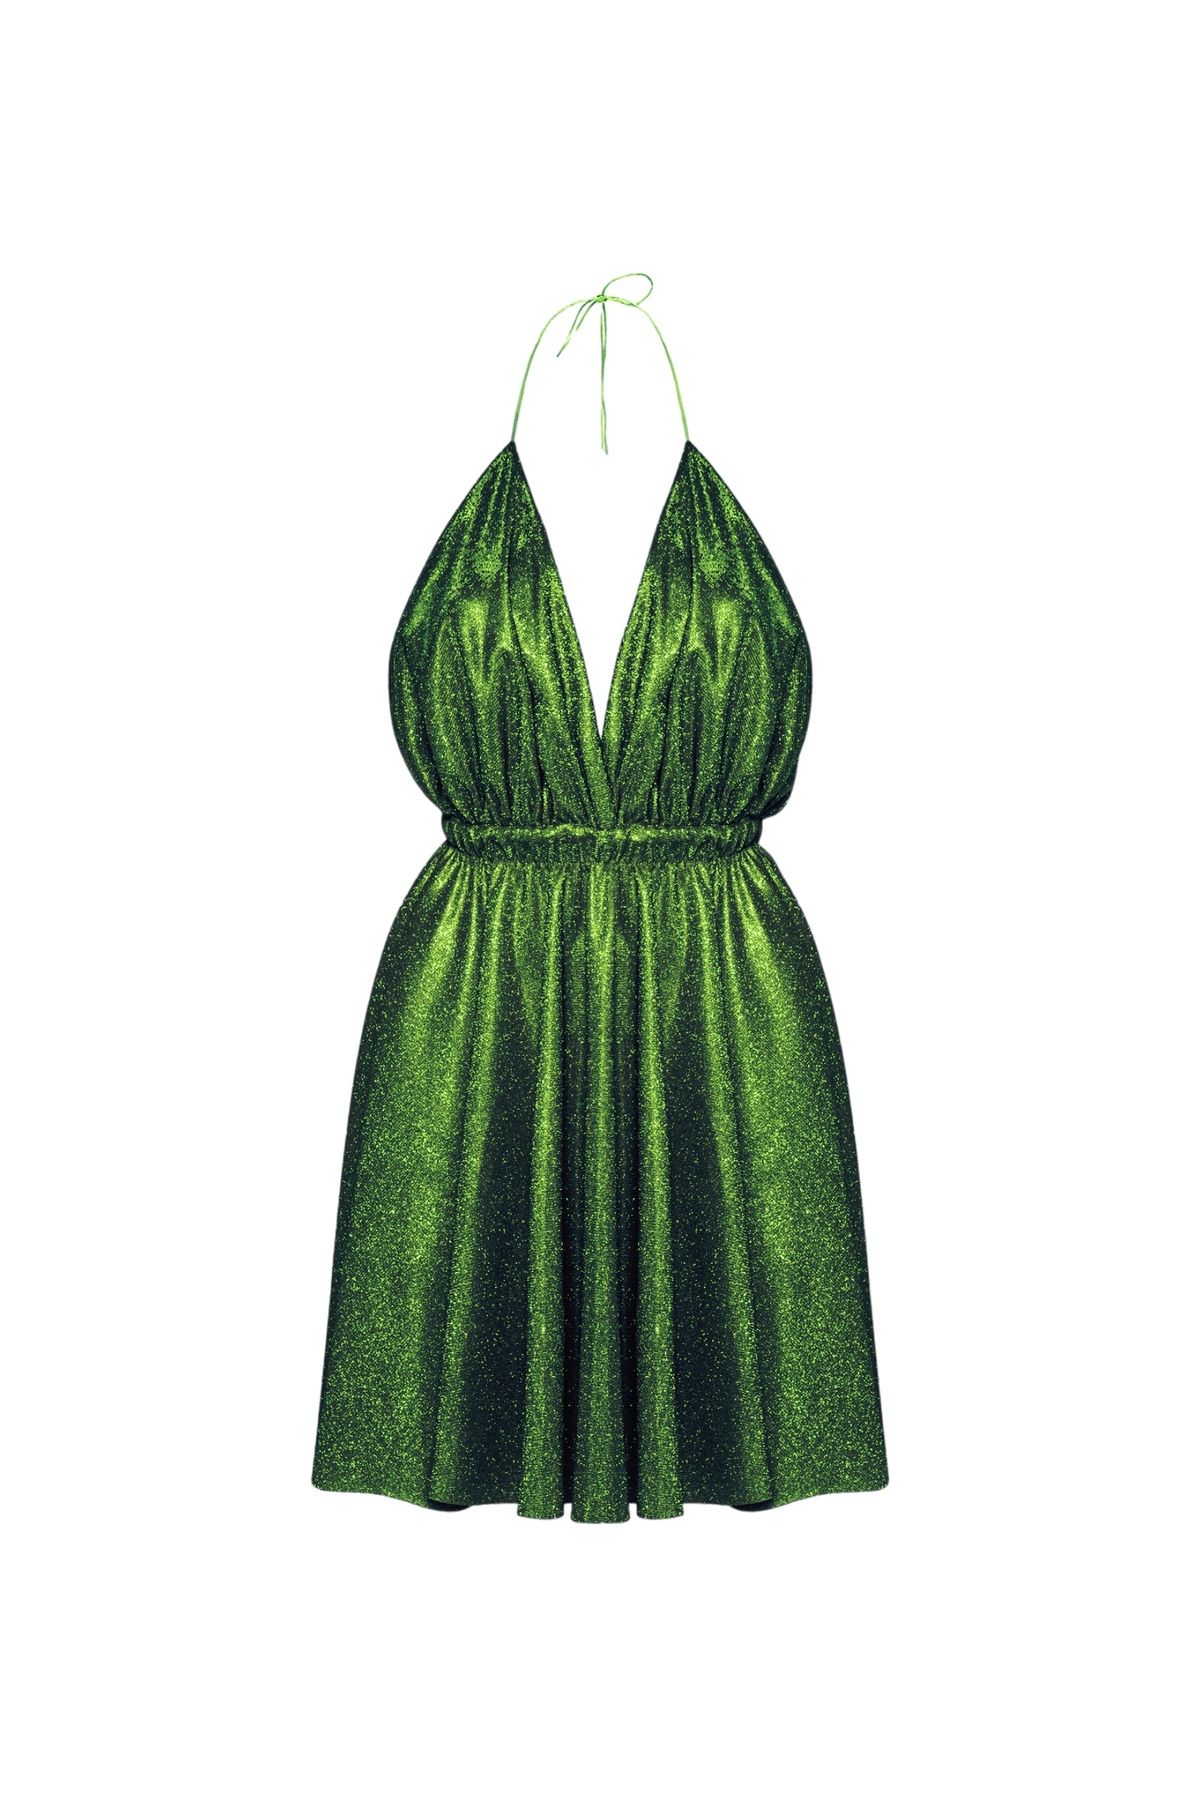 Gülşah Evecen Özel Tasarım Yeşil Kısa Elbise